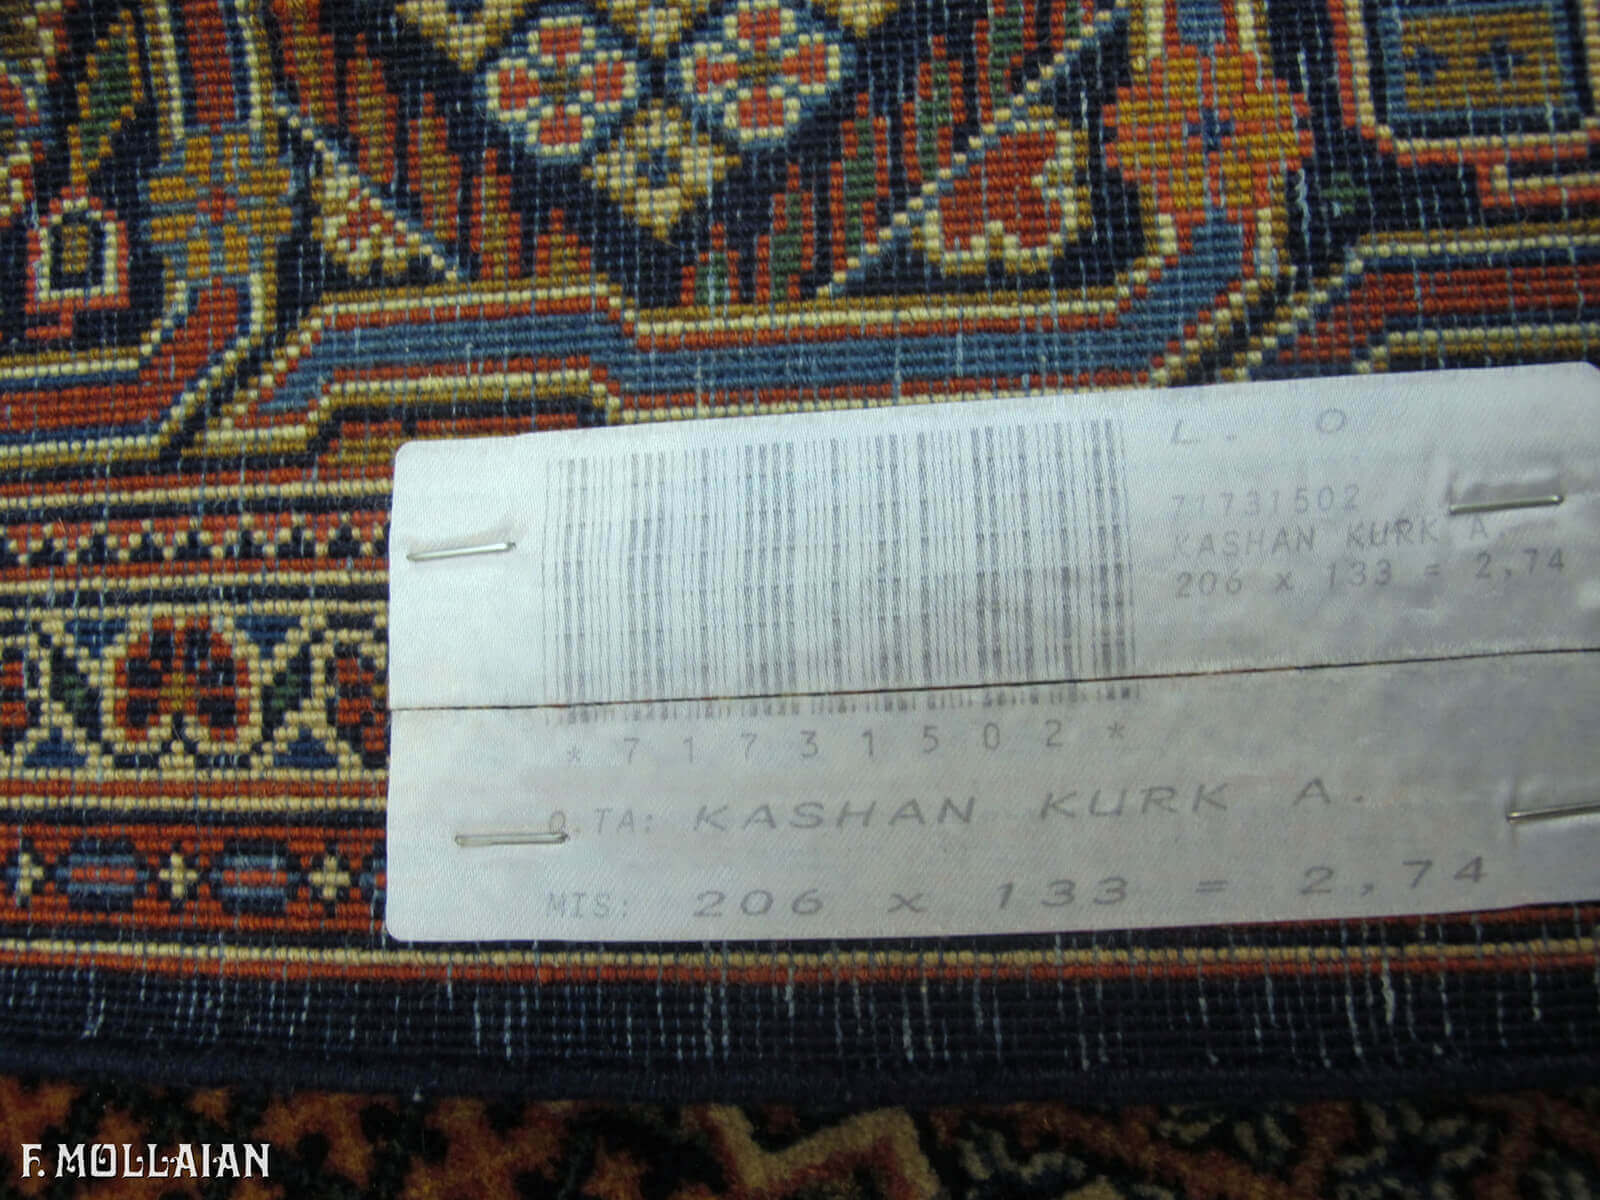 Tapis Persan Antique Kashan Kurk n°:71731502